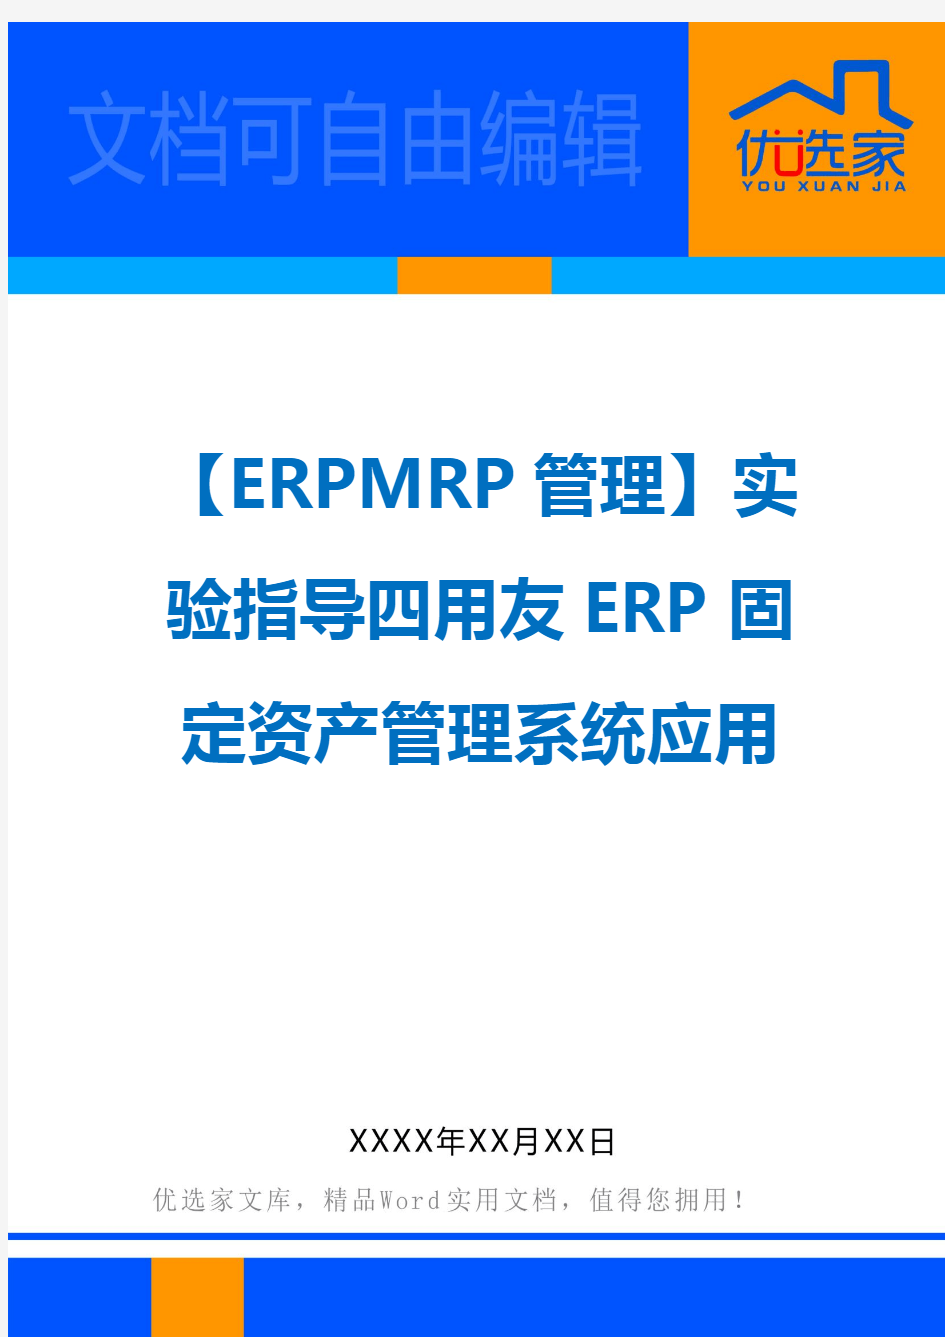 【ERPMRP管理】实验指导四用友ERP固定资产管理系统应用